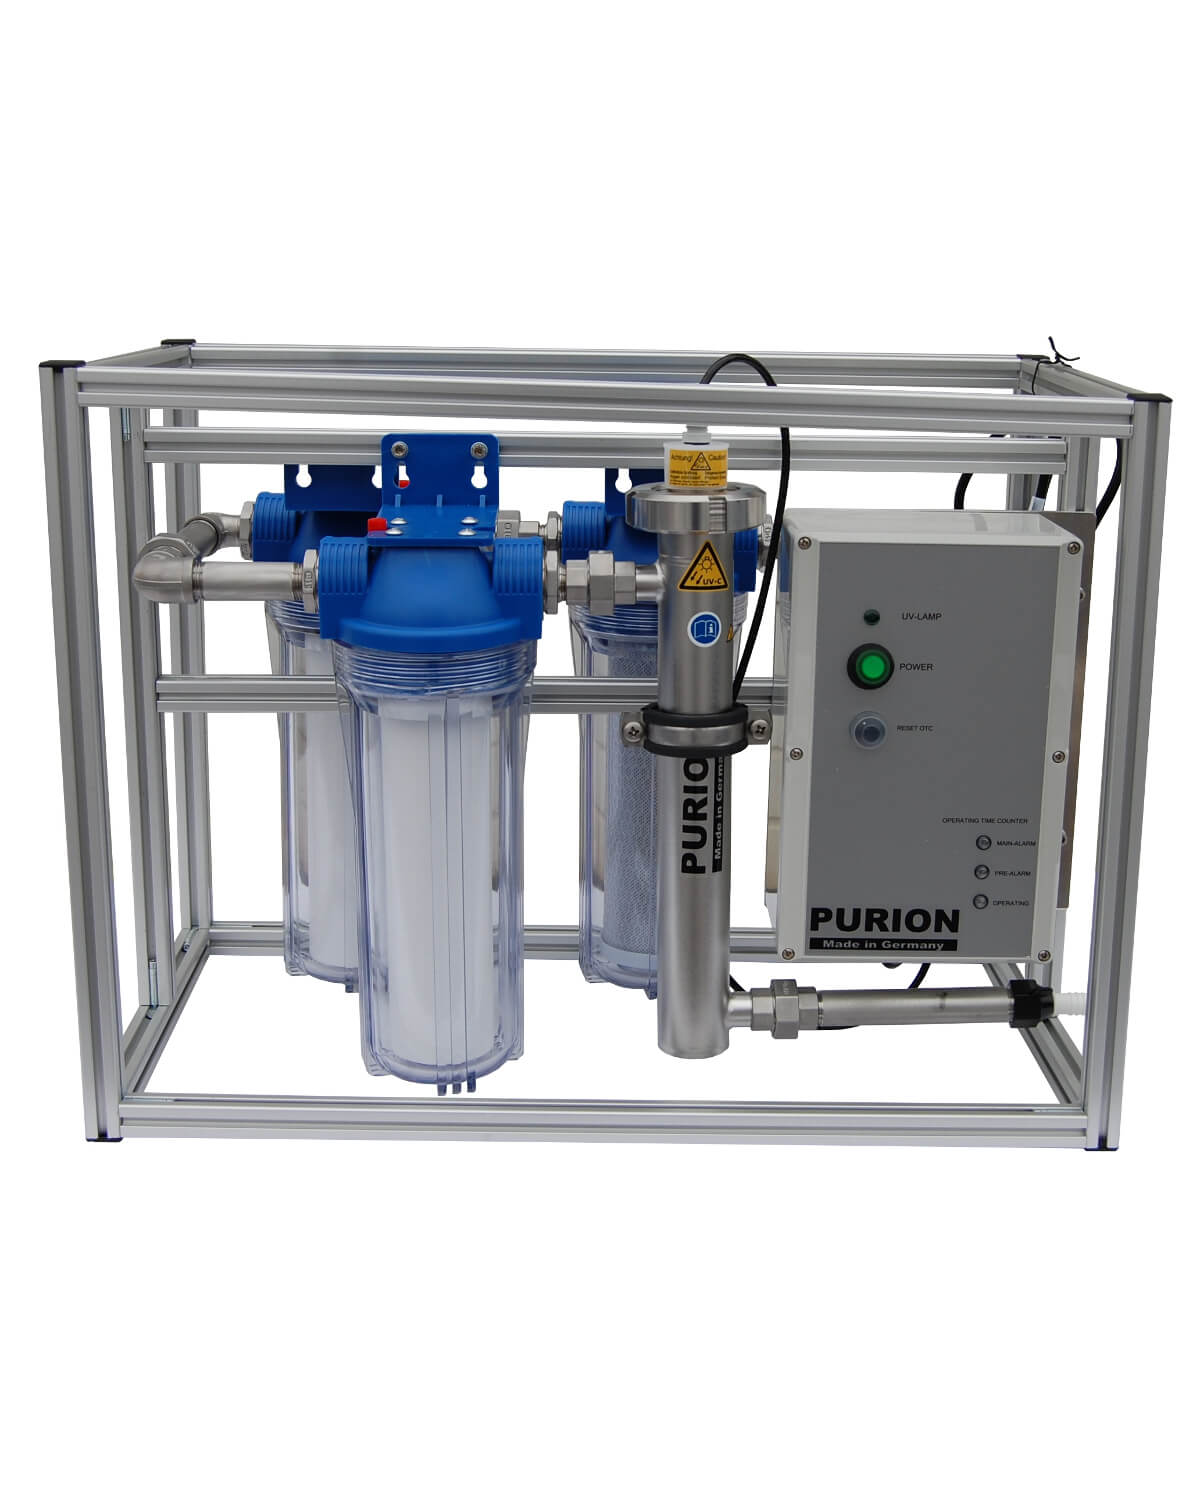 Das Fusion-Wasseraufbereitungssystem verfügt über die leistungsstarke Kombination aus dem PURION GmbH Kompaktsystem MAX und der PURION UV-C-Desinfektionslage und sorgt so für eine hochwirksame Desinfektion. Darüber hinaus ist es